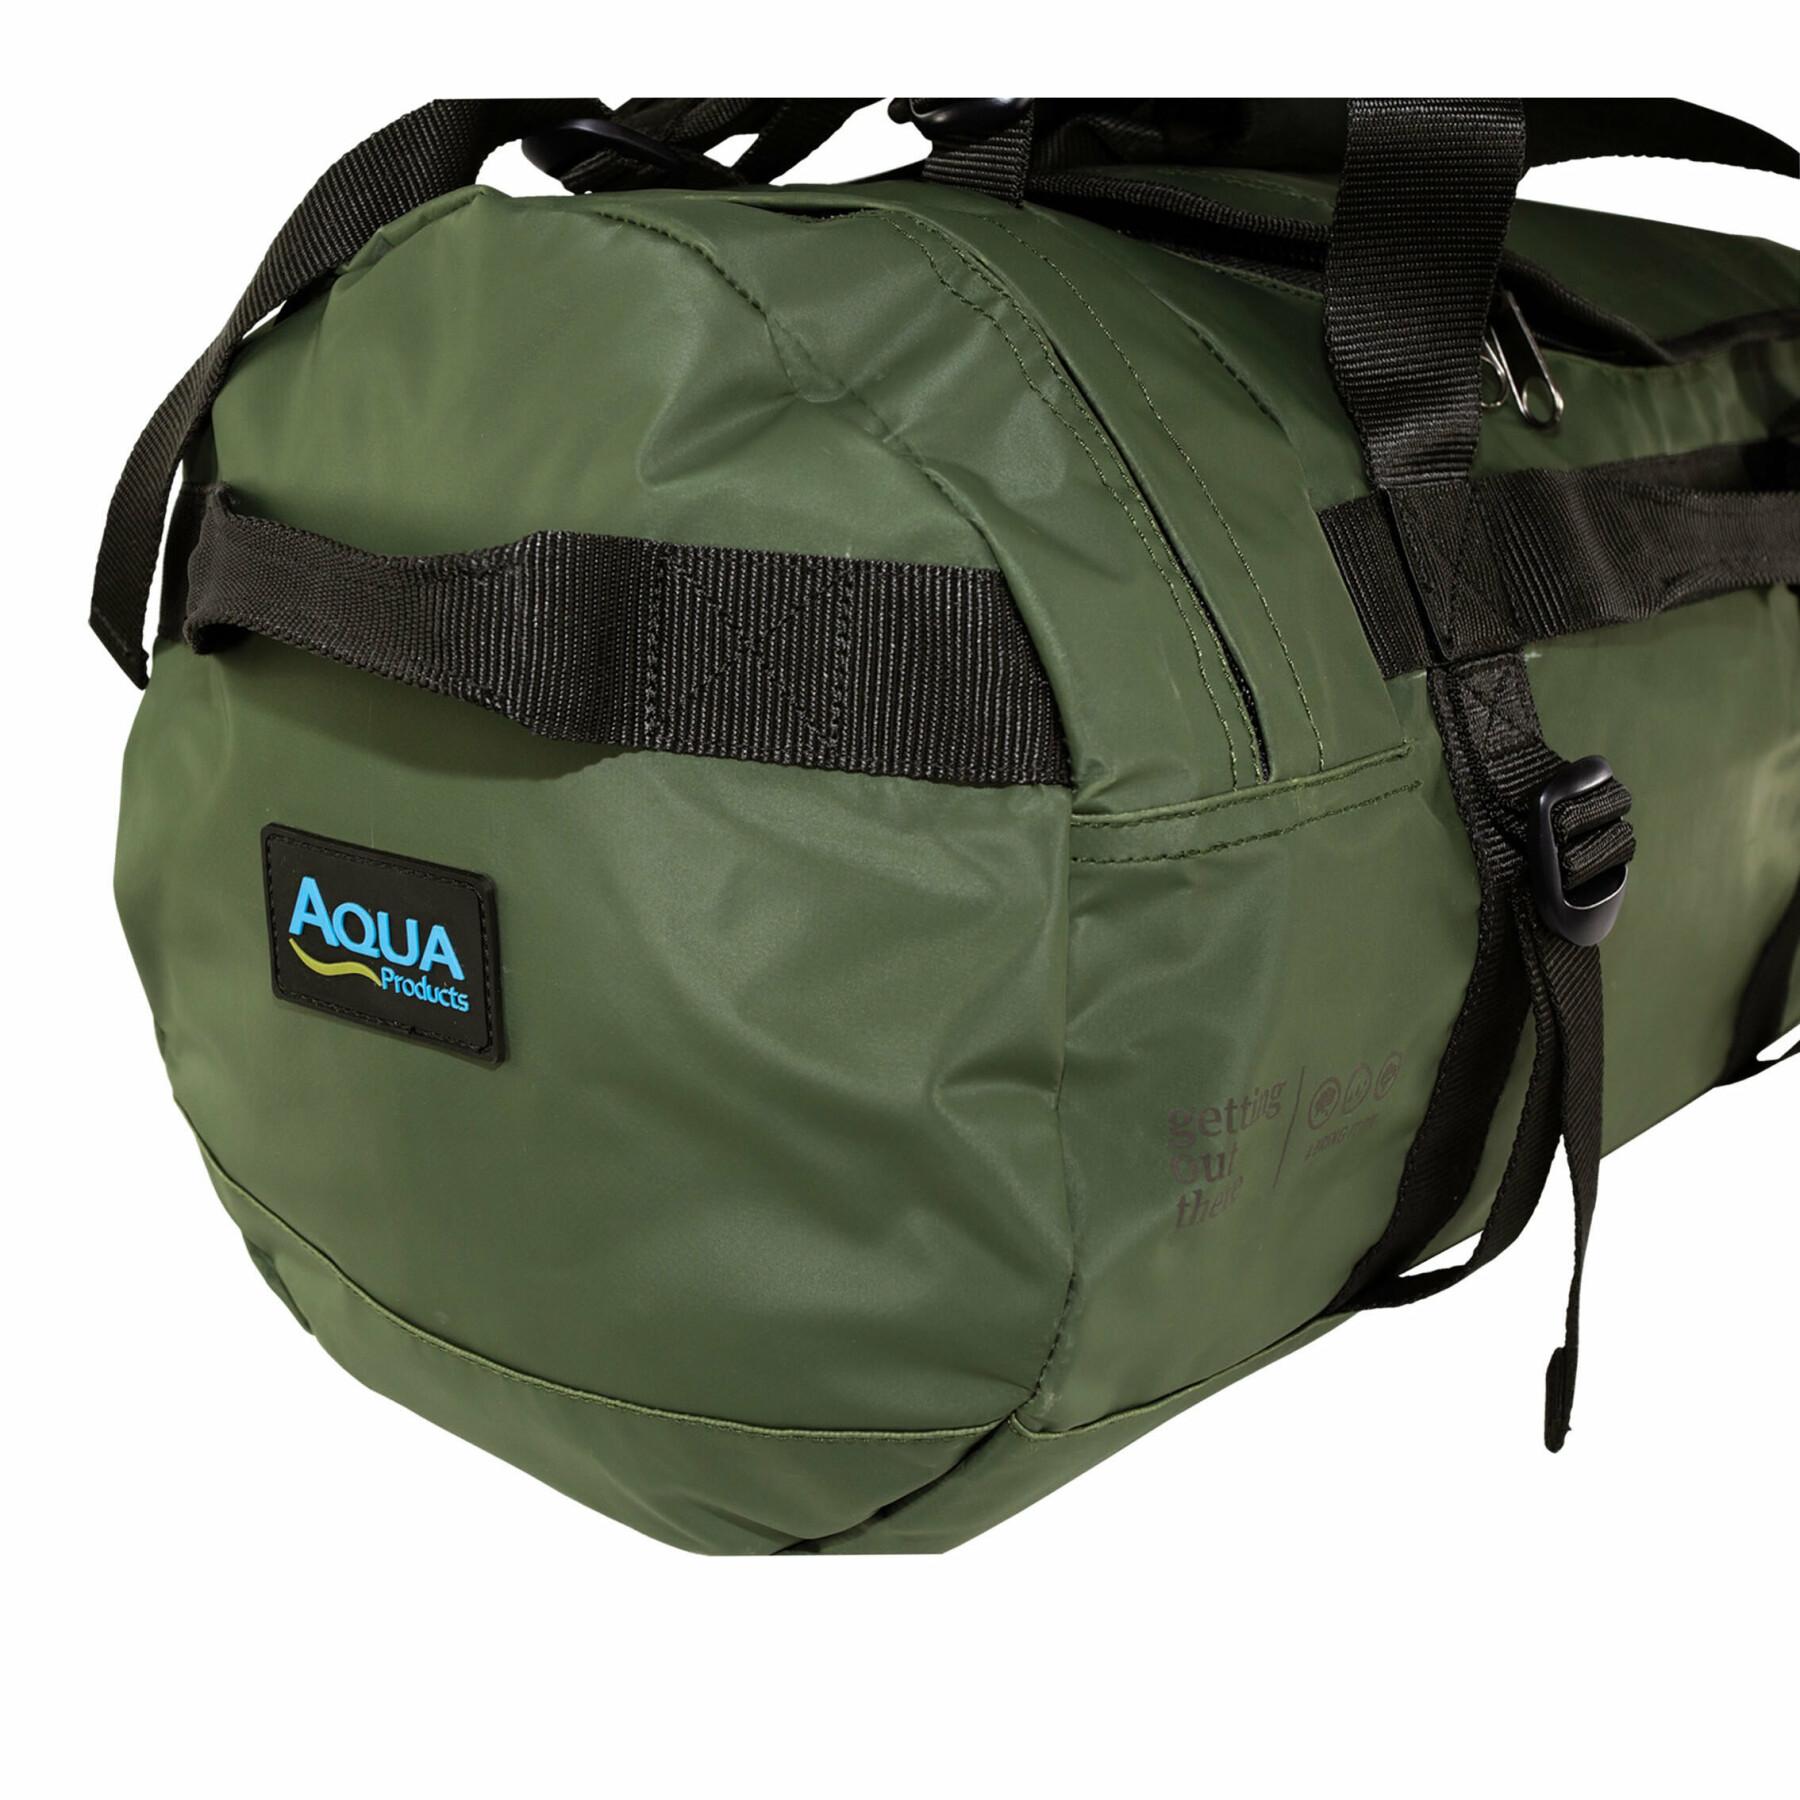 Sports bag Aqua Products torrent duffel